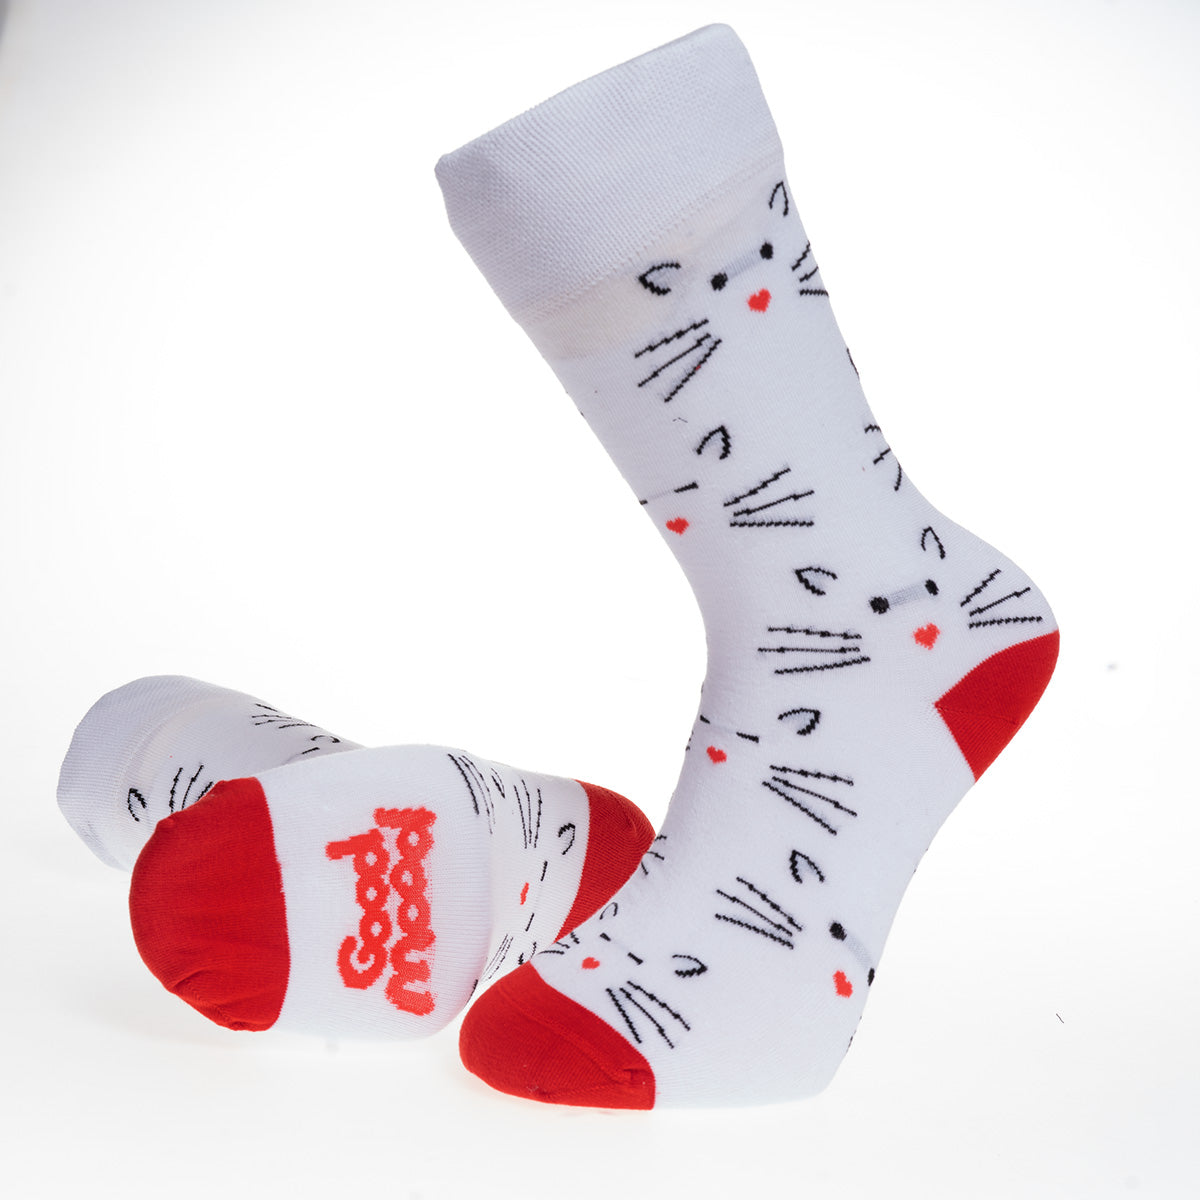 White Printed-European Made - Egyptian Cotton Socks - Premium Cotton Fun socks with Soft Elastic